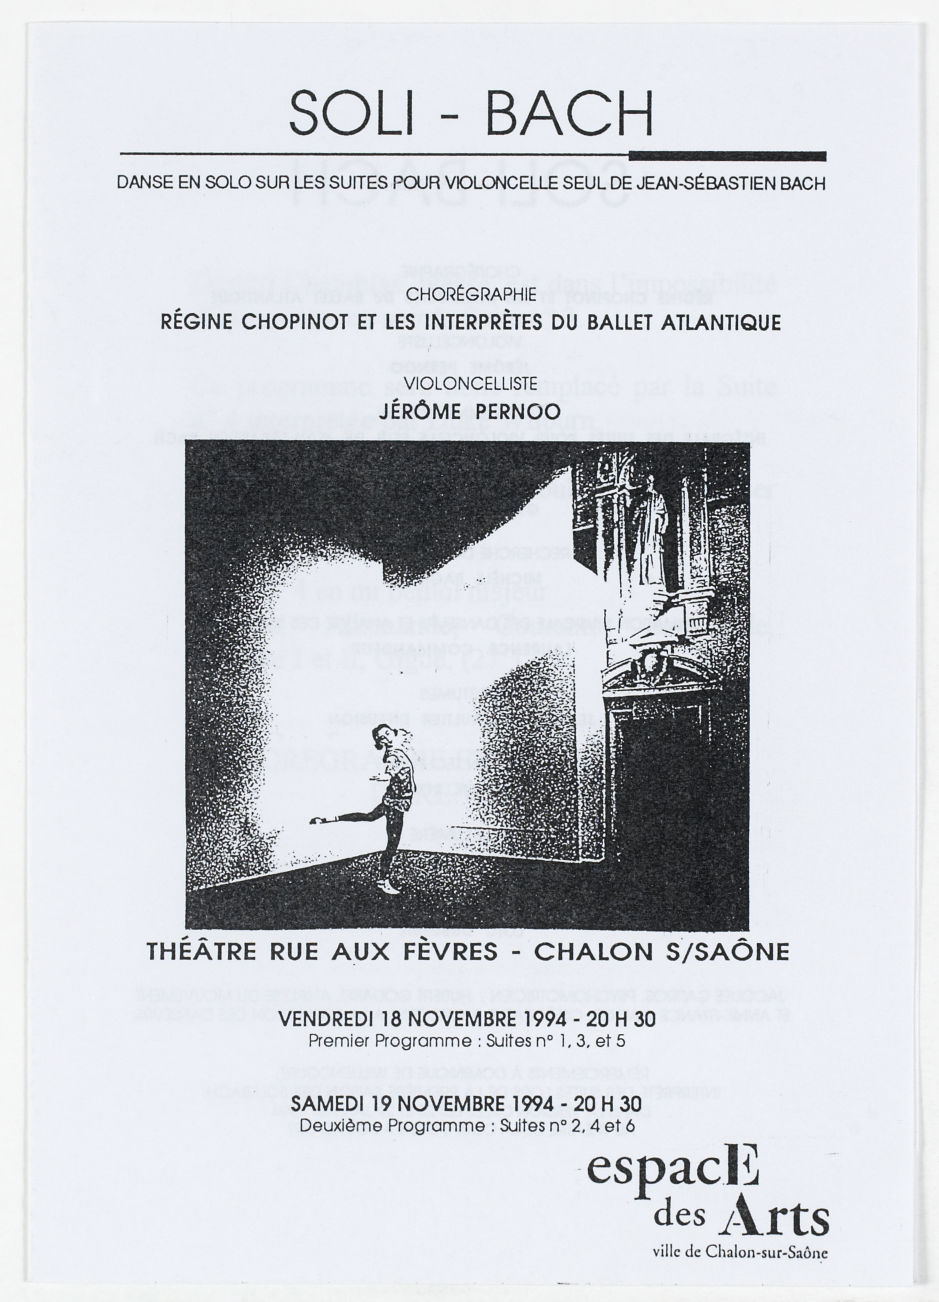  Feuille de salle de la deuxième version à Chalon-sur-Saône (novembre 1994)